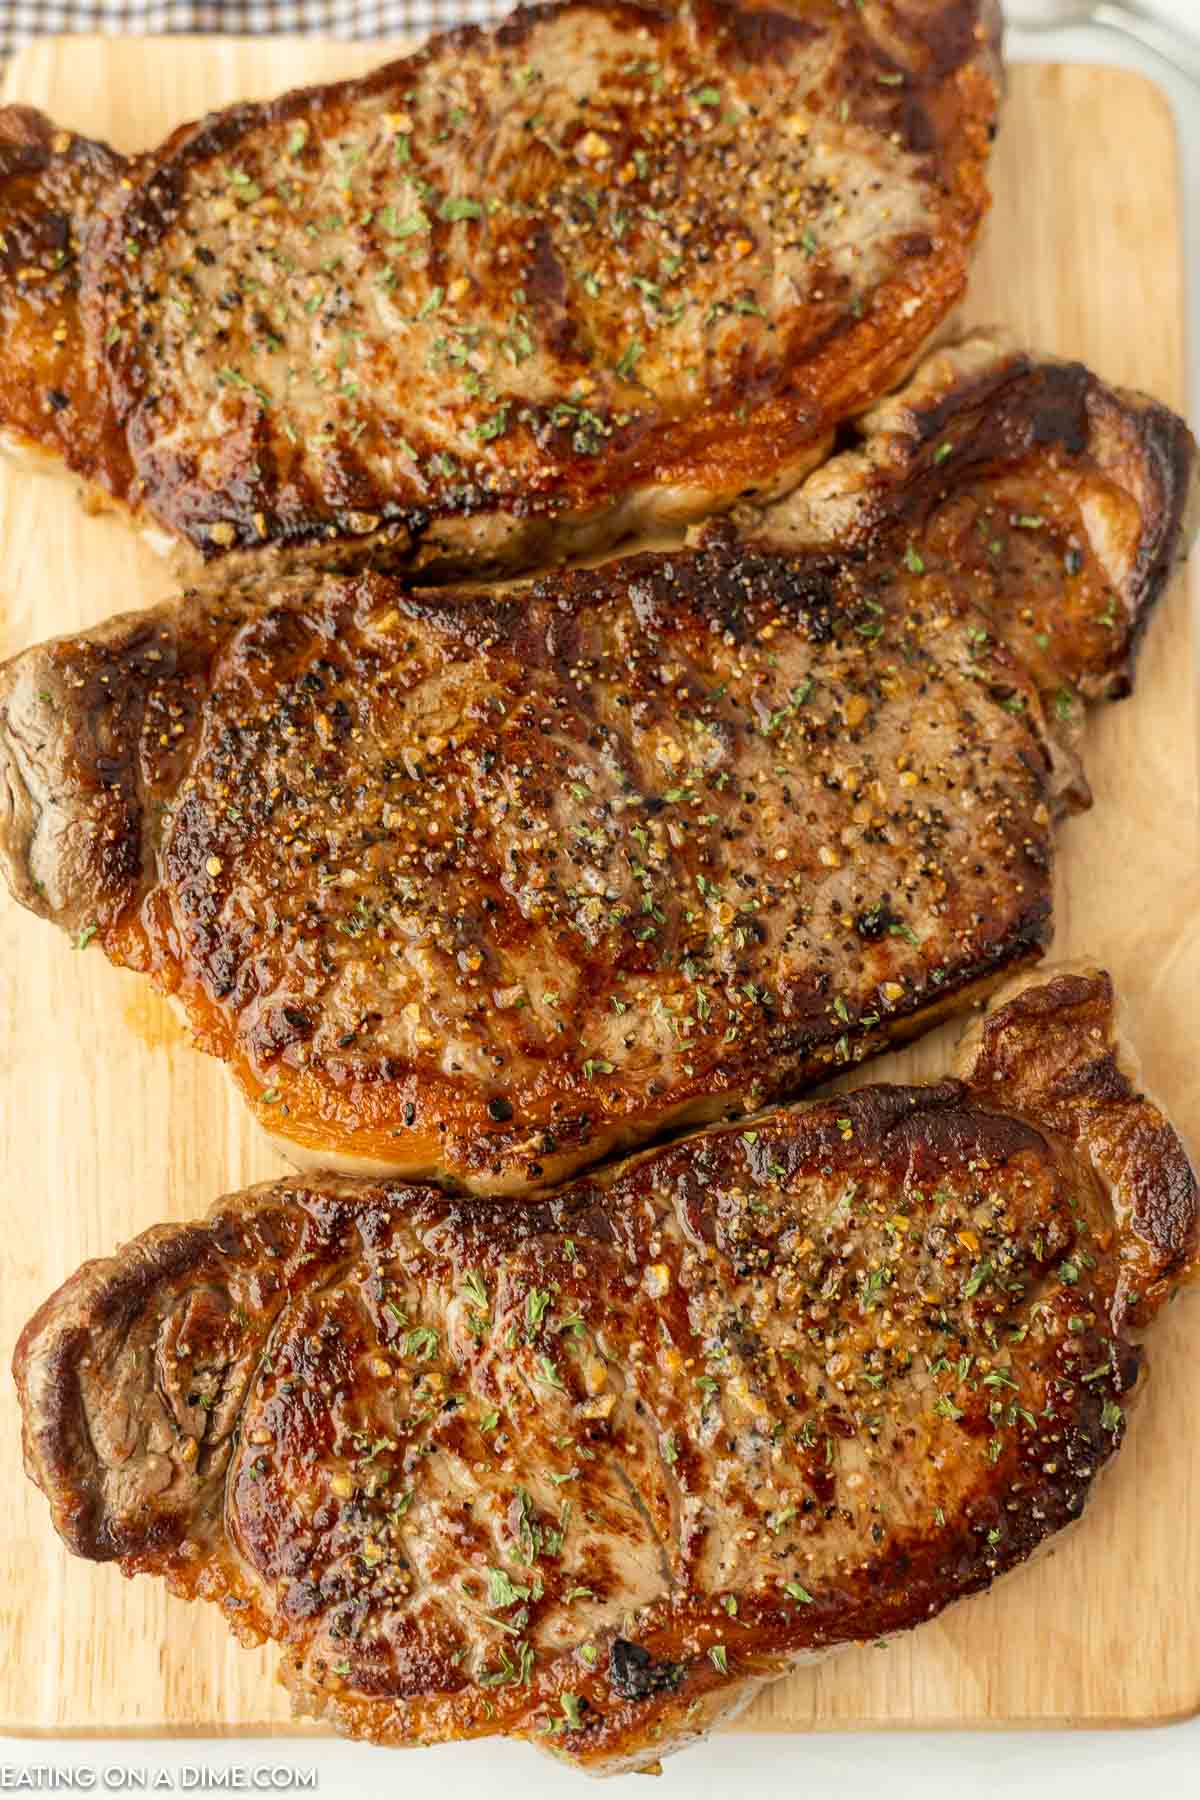 https://www.eatingonadime.com/wp-content/uploads/2022/06/steak-on-griddle-4.jpg